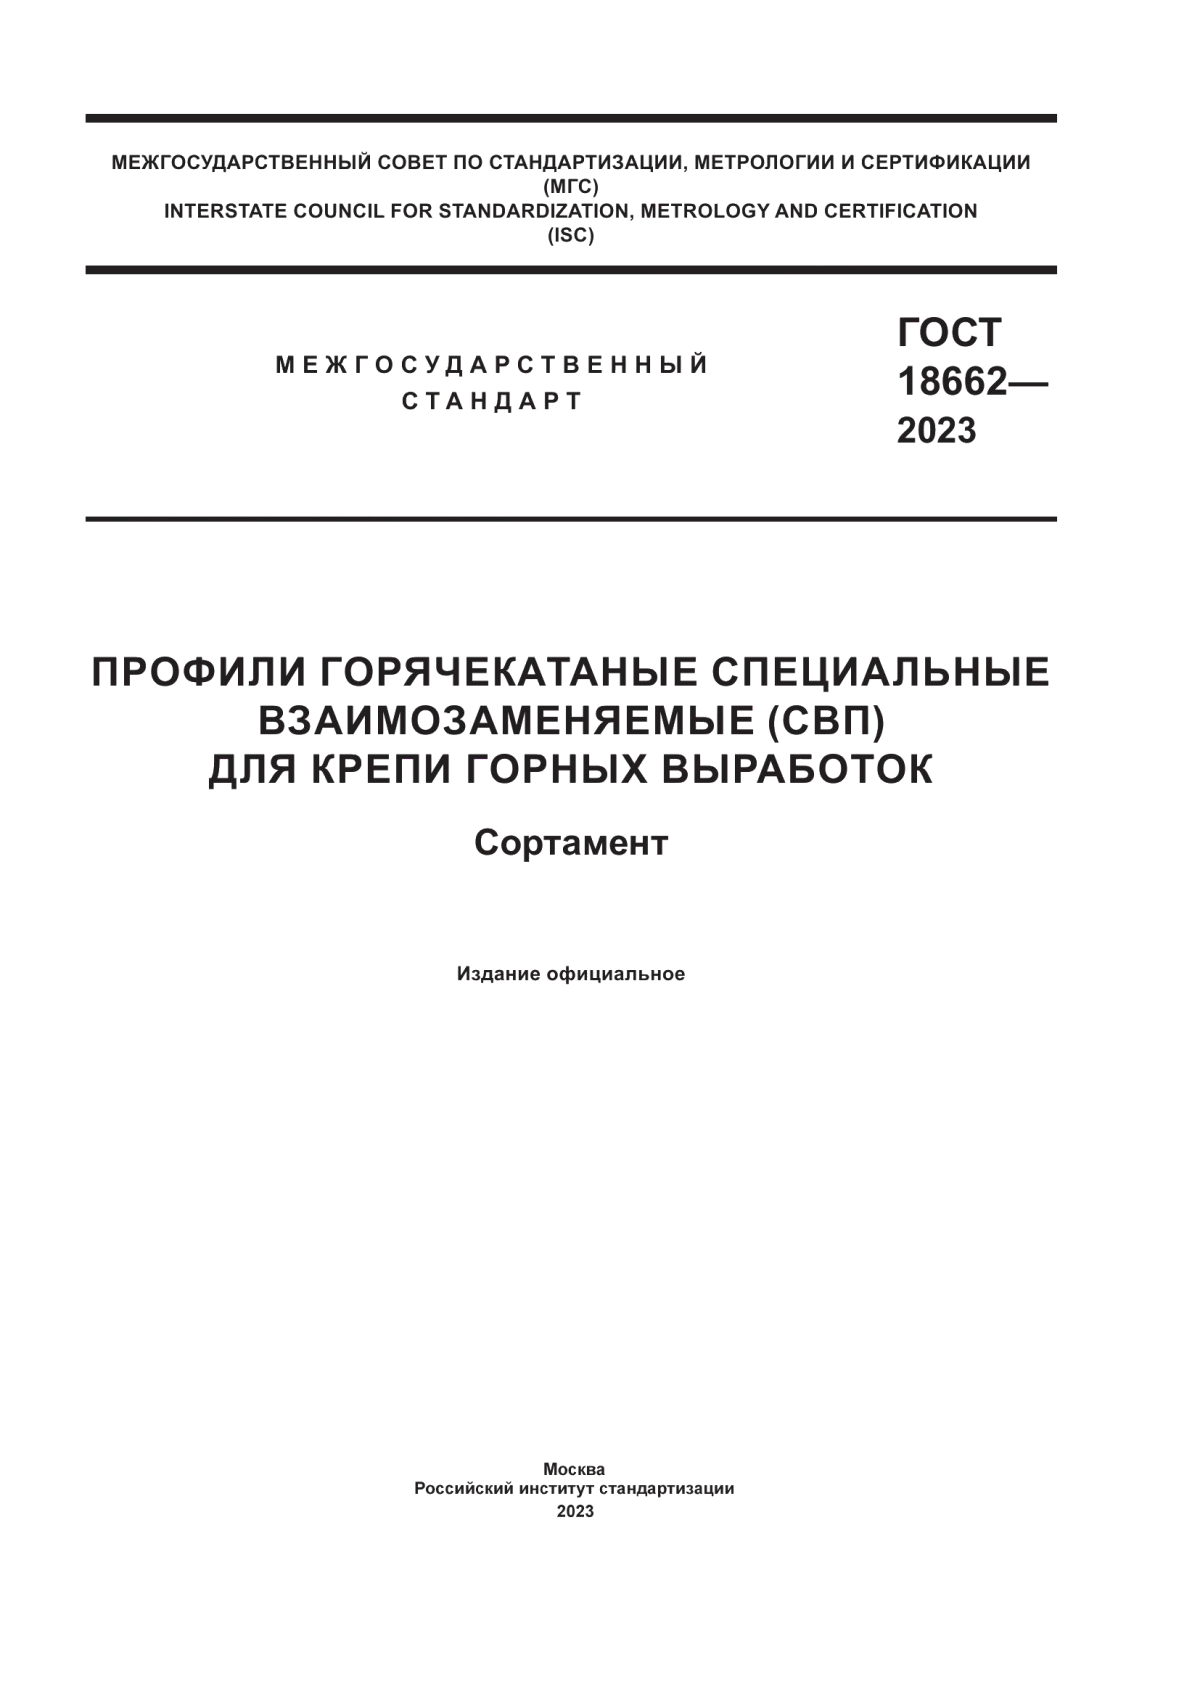 ГОСТ 18662-2023 Профили горячекатаные специальные взаимозаменяемые (СВП) для крепи горных выработок. Сортамент